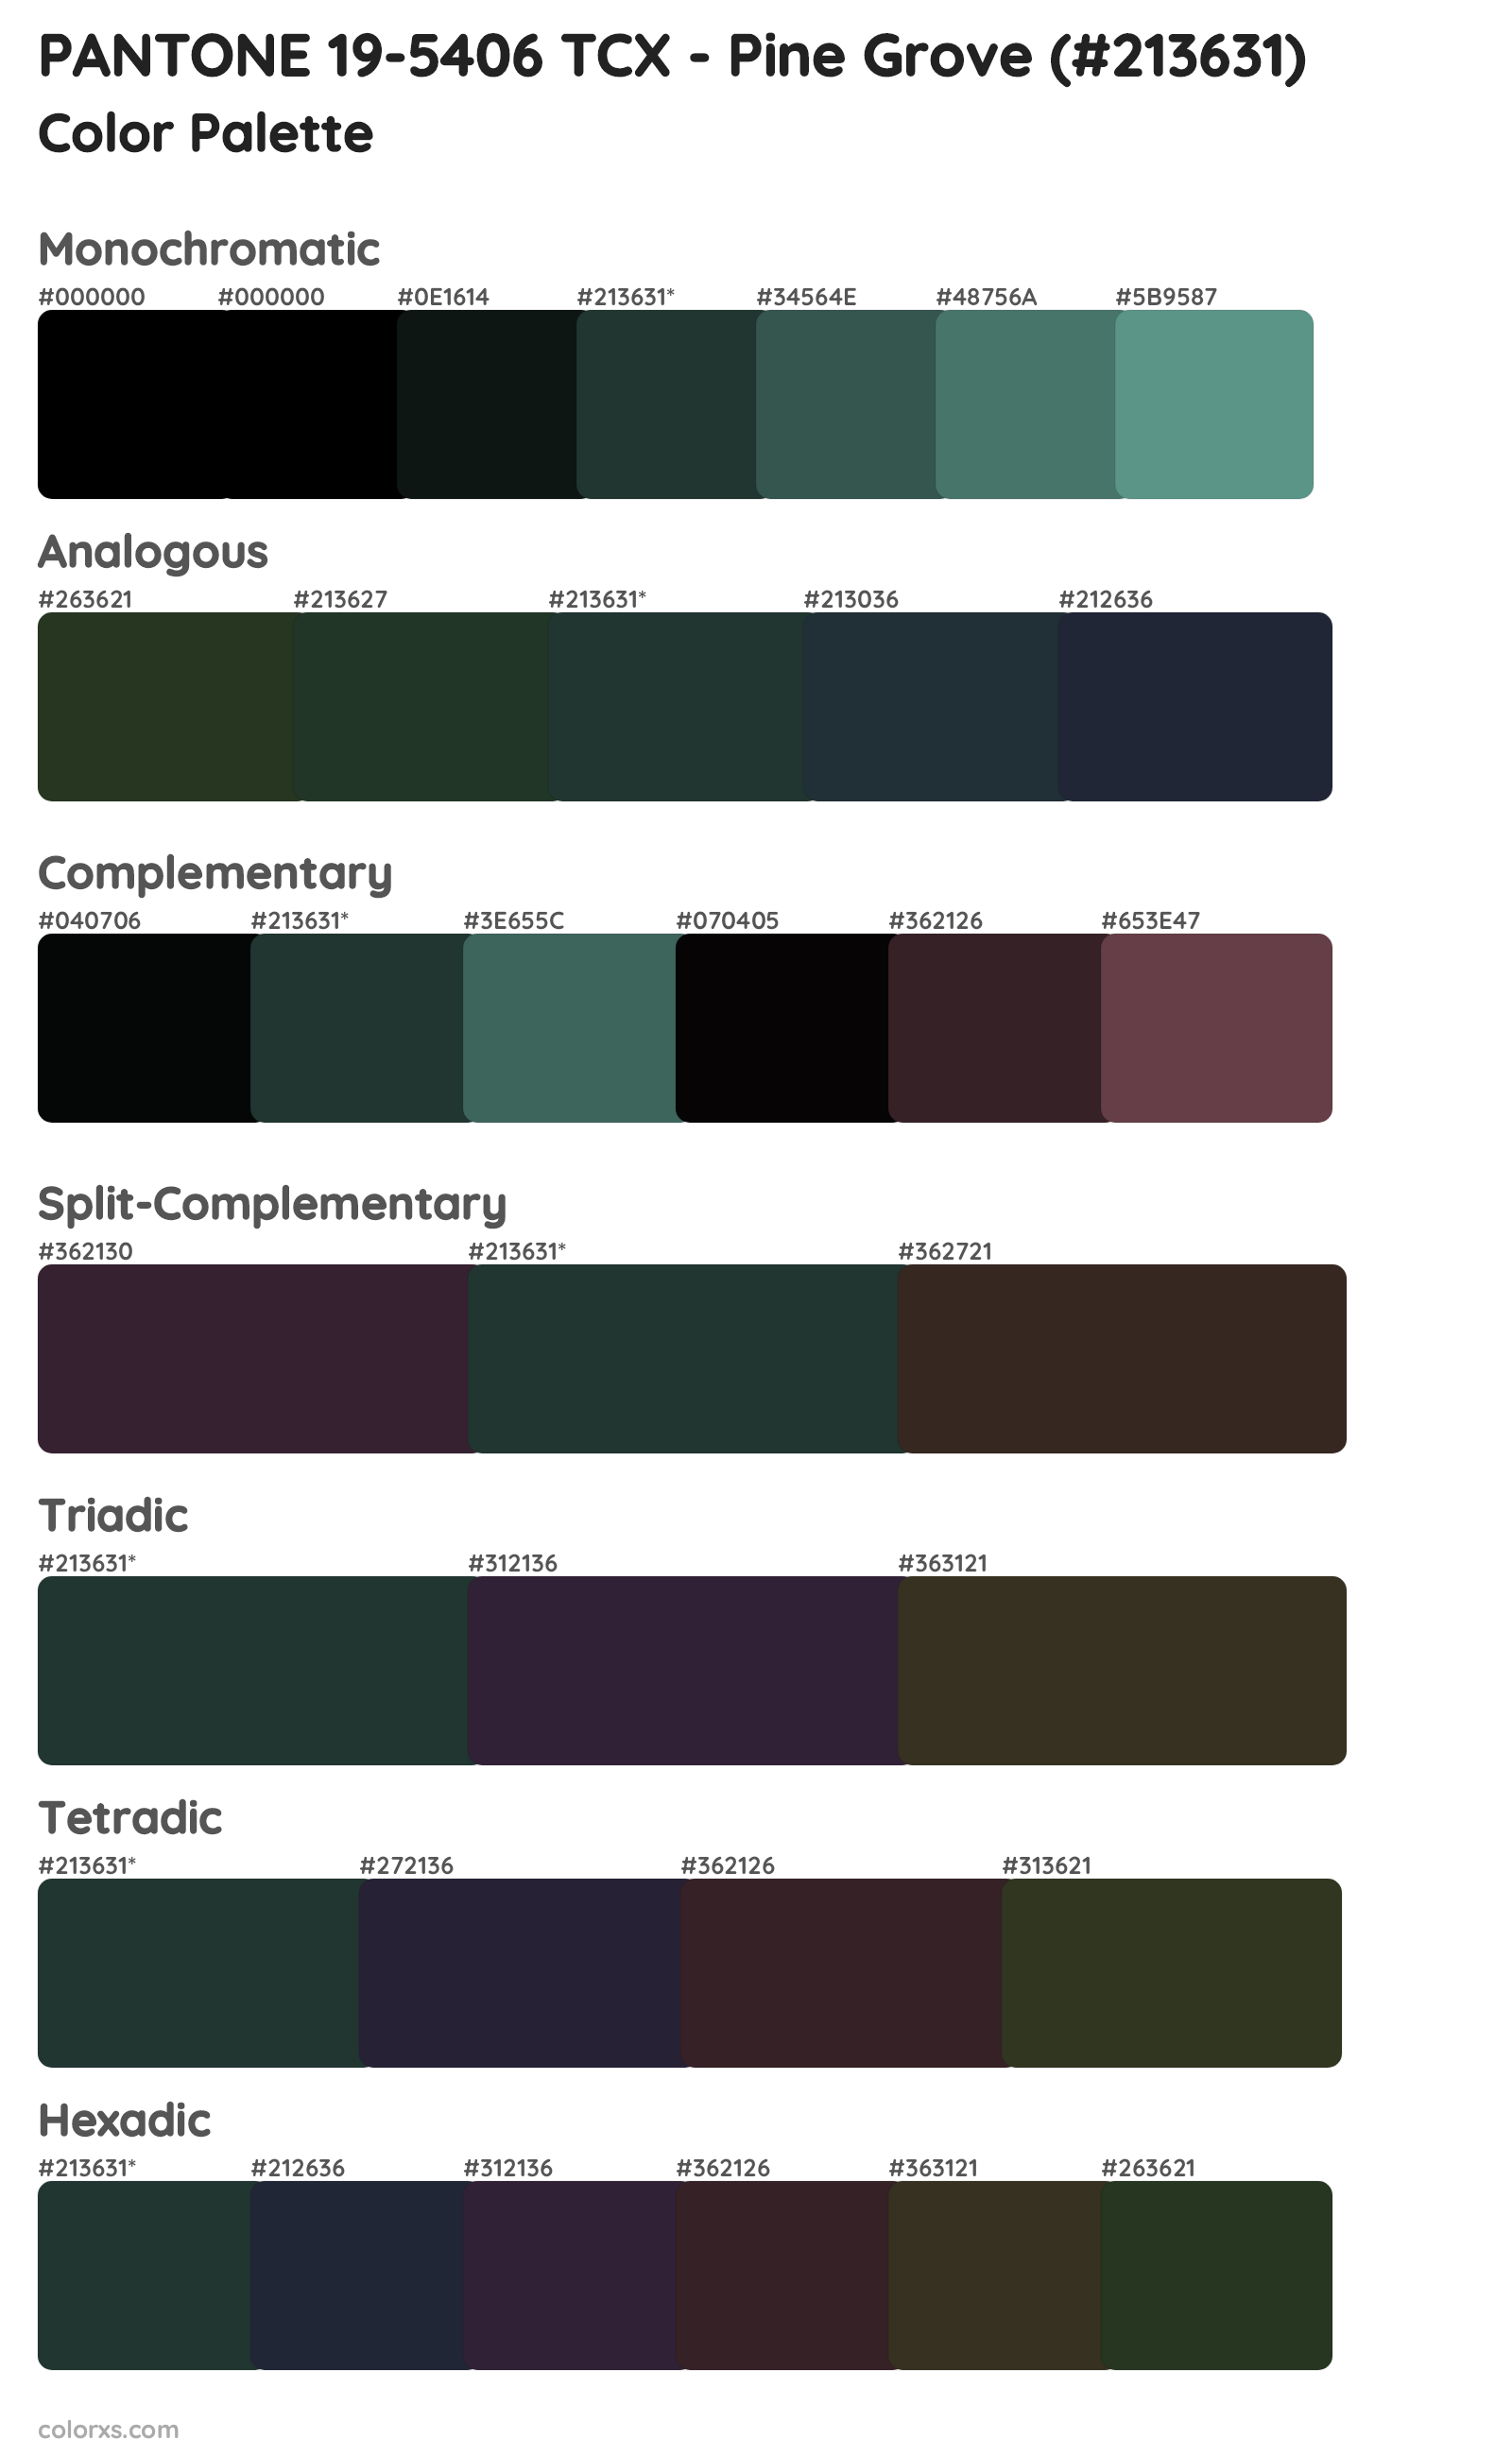 PANTONE 19-5406 TCX - Pine Grove Color Scheme Palettes